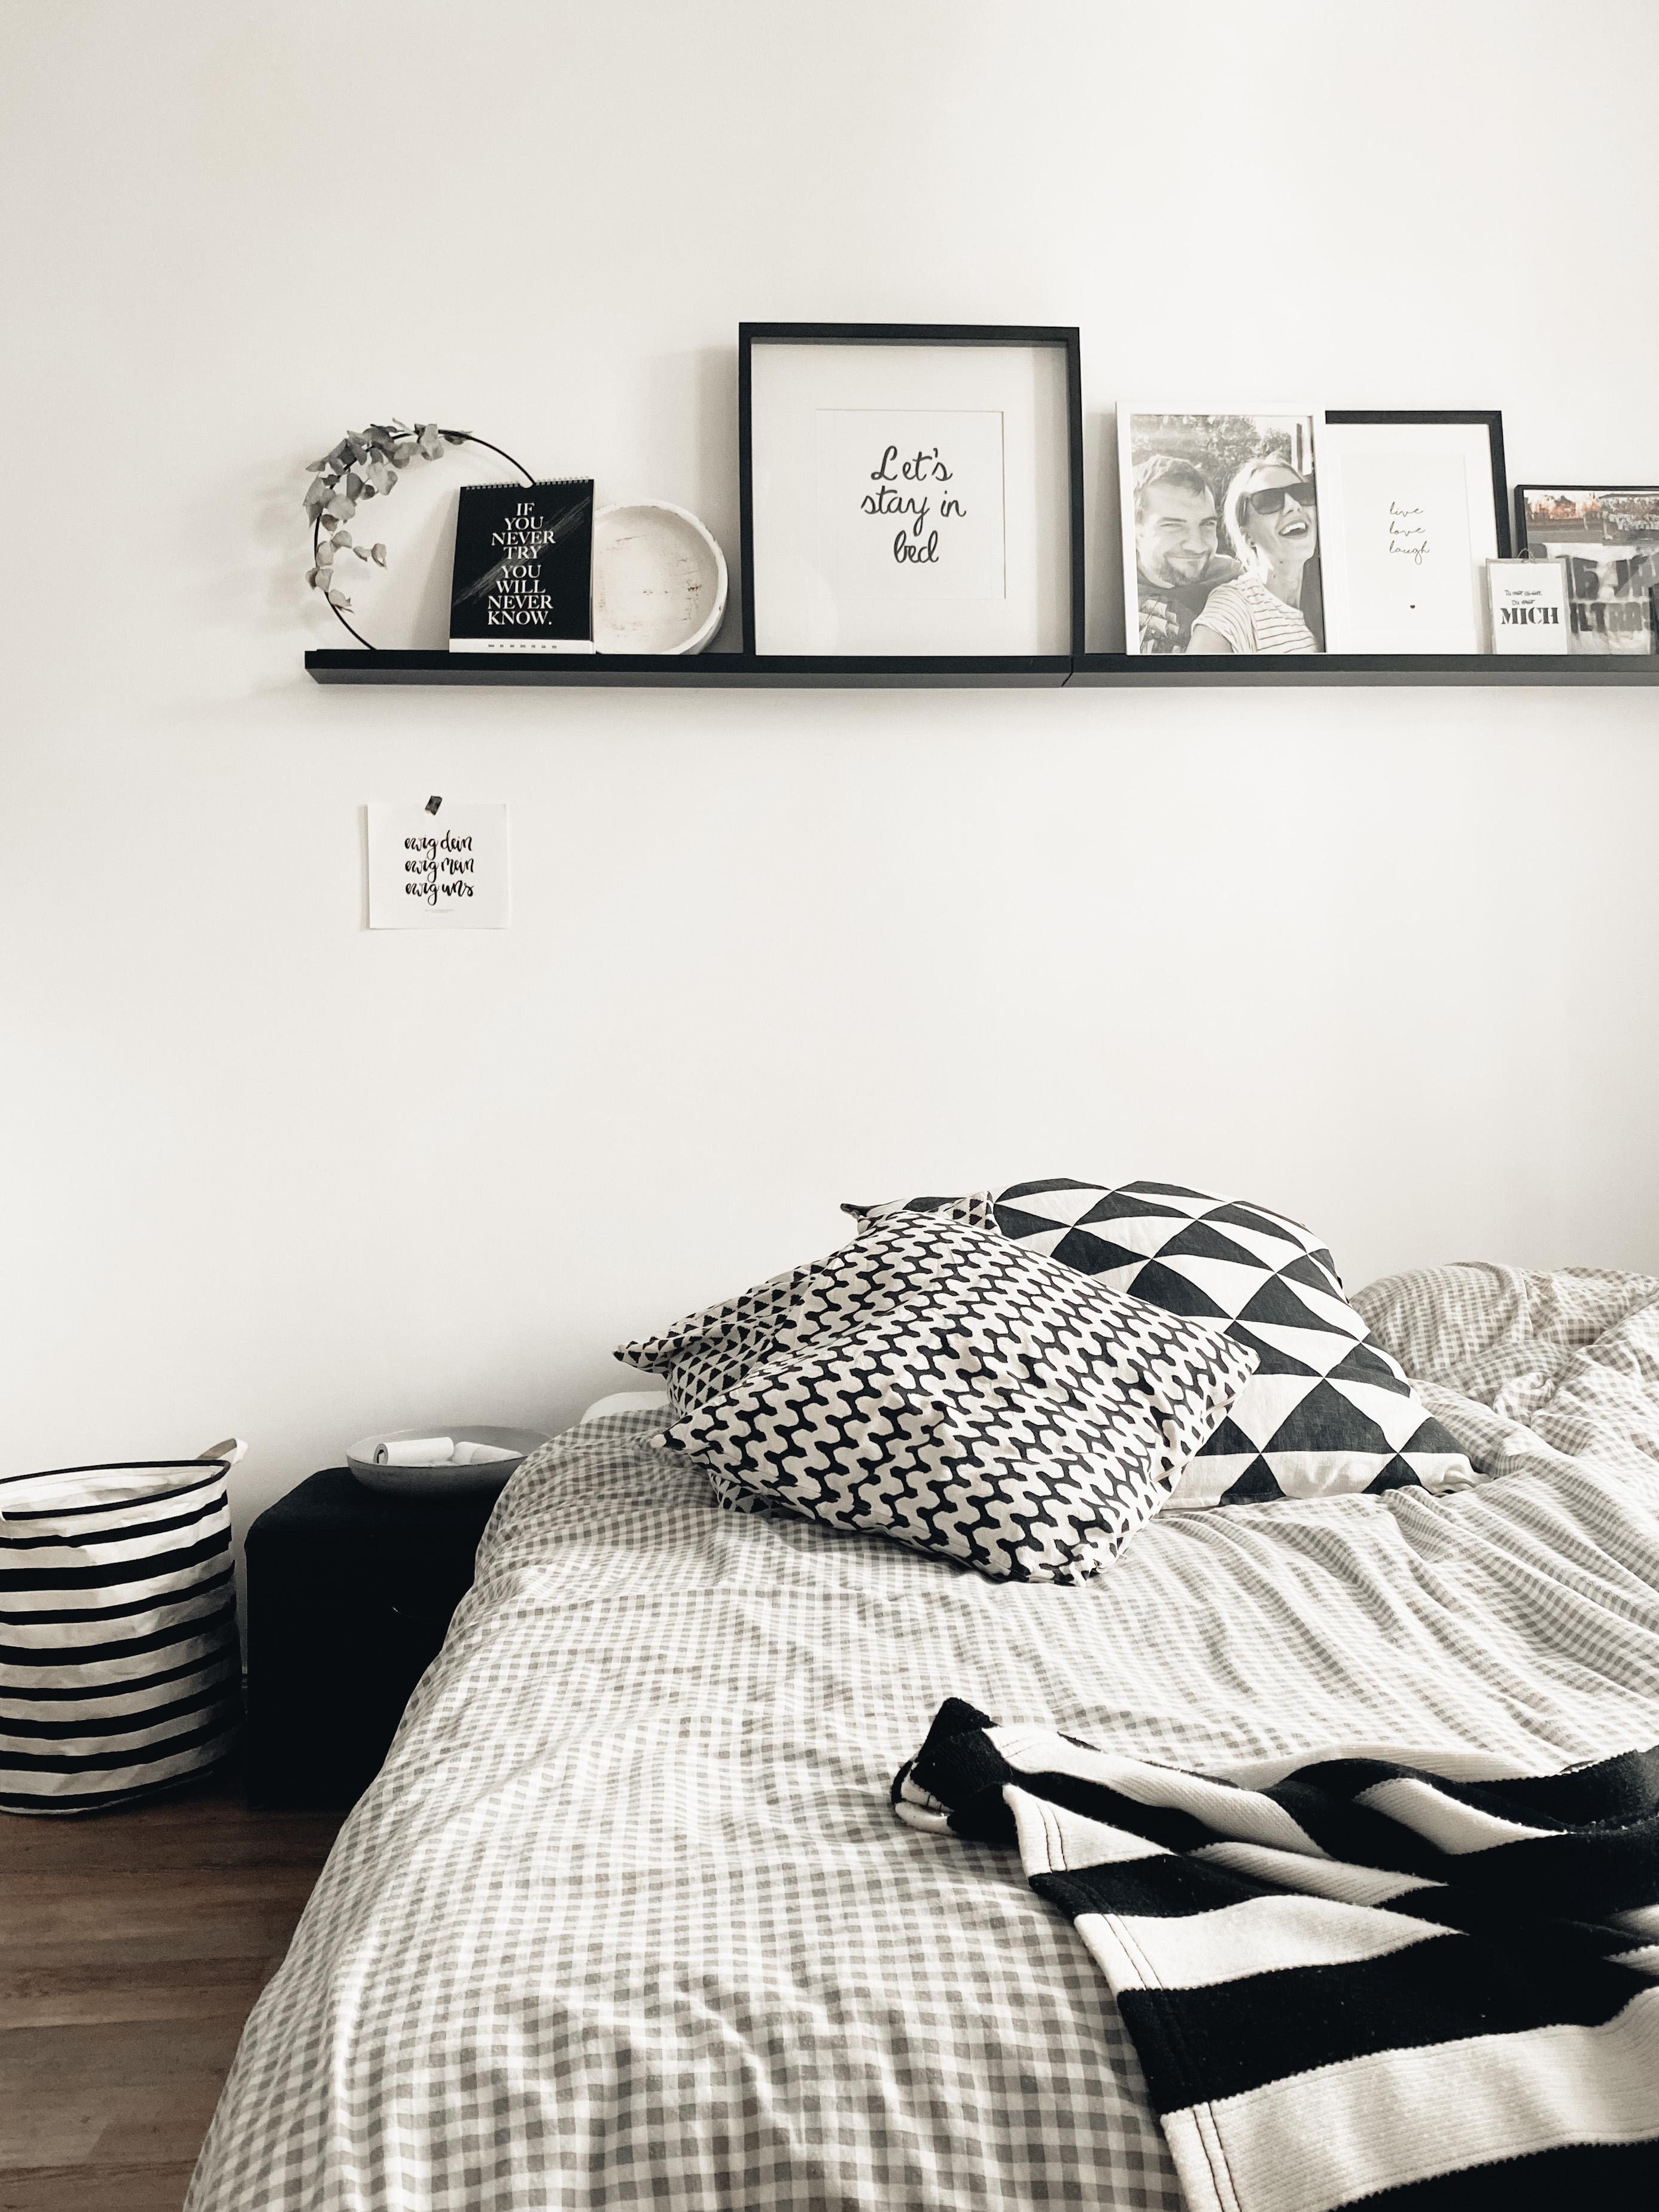 Neuer Look im Schlafzimmer #blackandwhite #couchliebt #whiteliving #bedroom